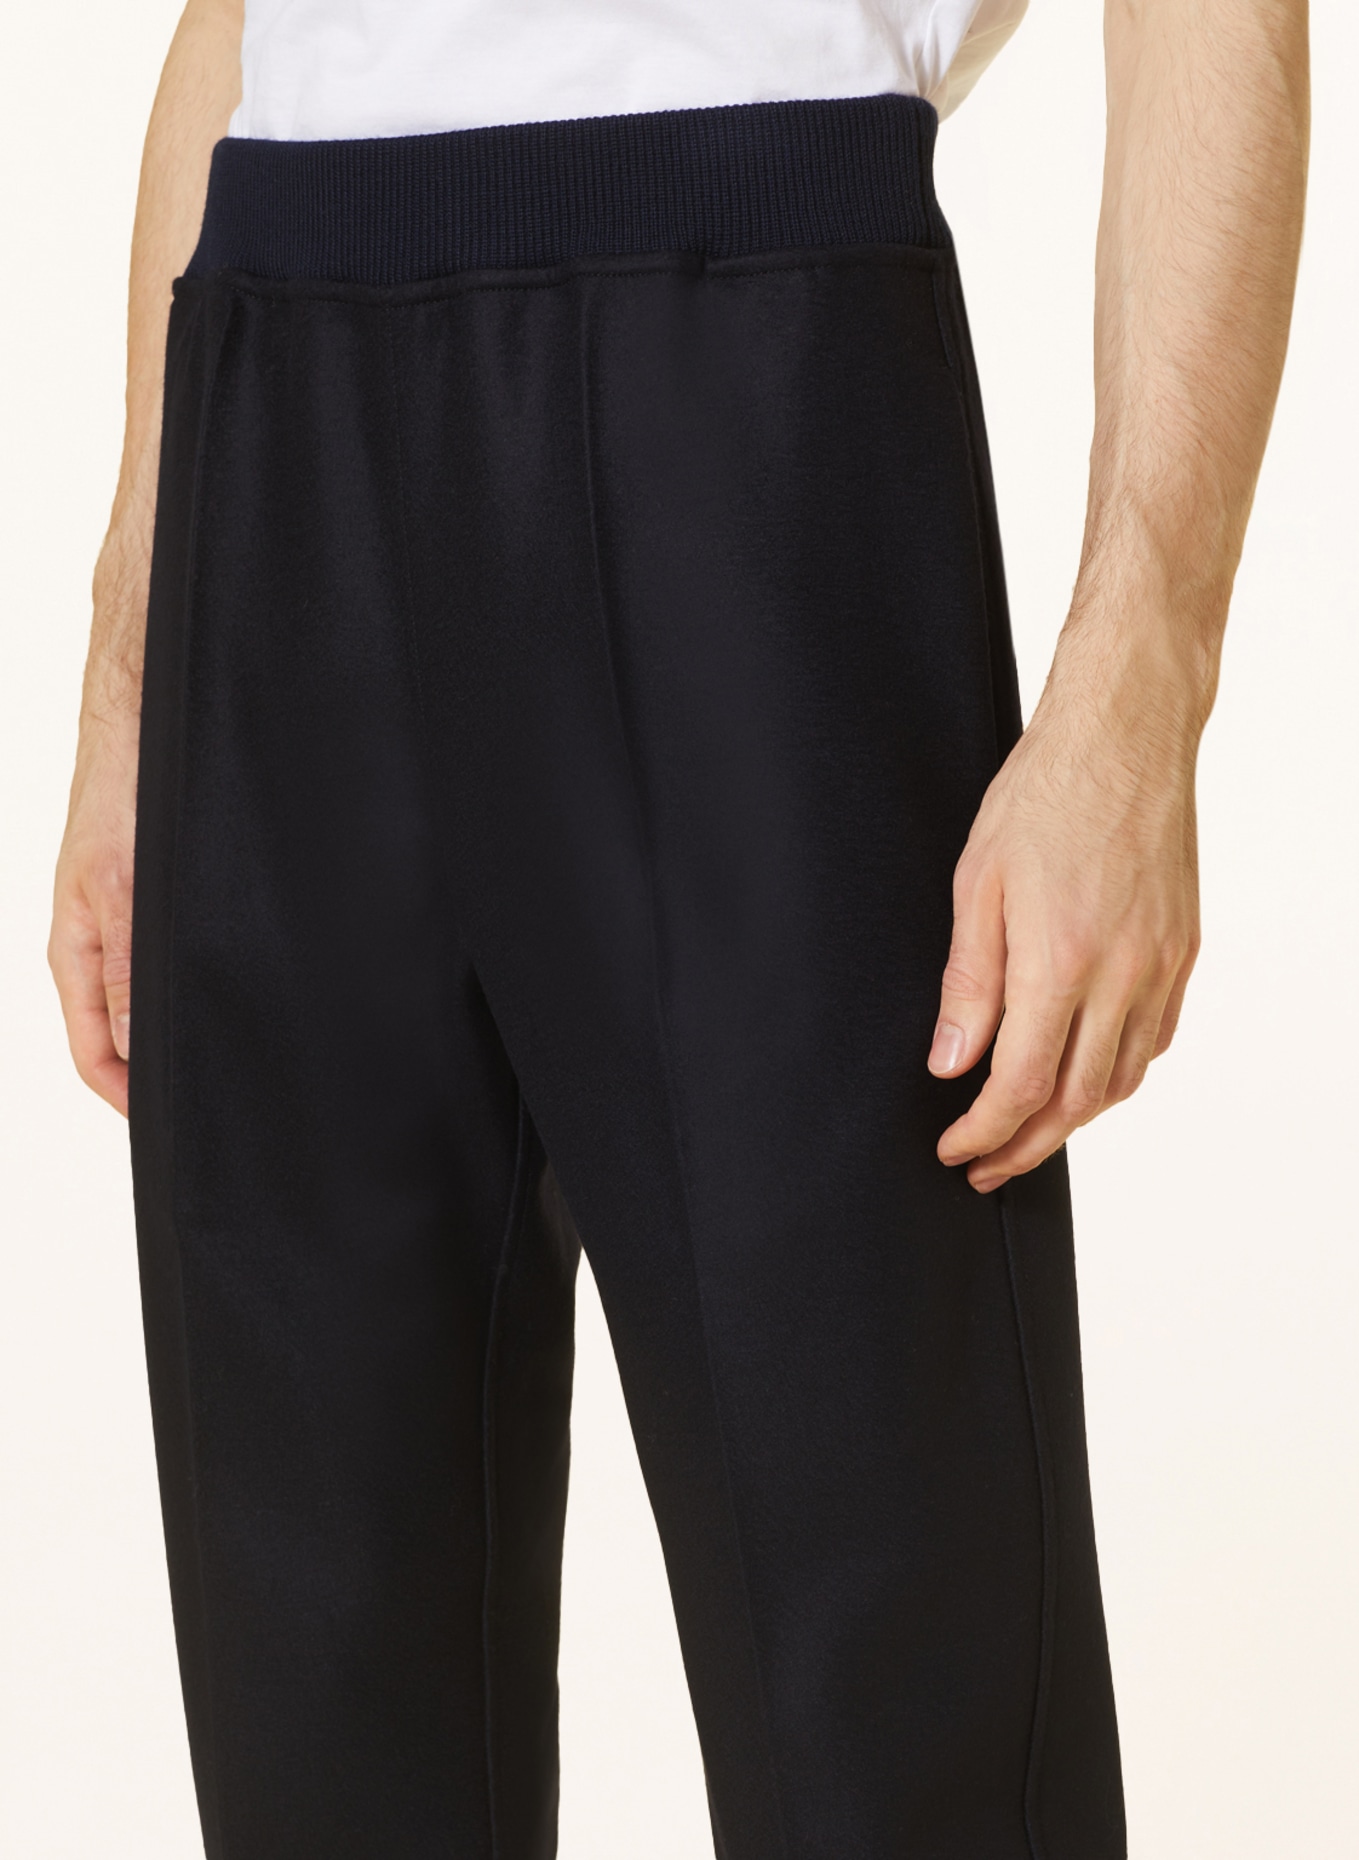 JIL SANDER Pants in jogger style, Color: DARK BLUE (Image 5)